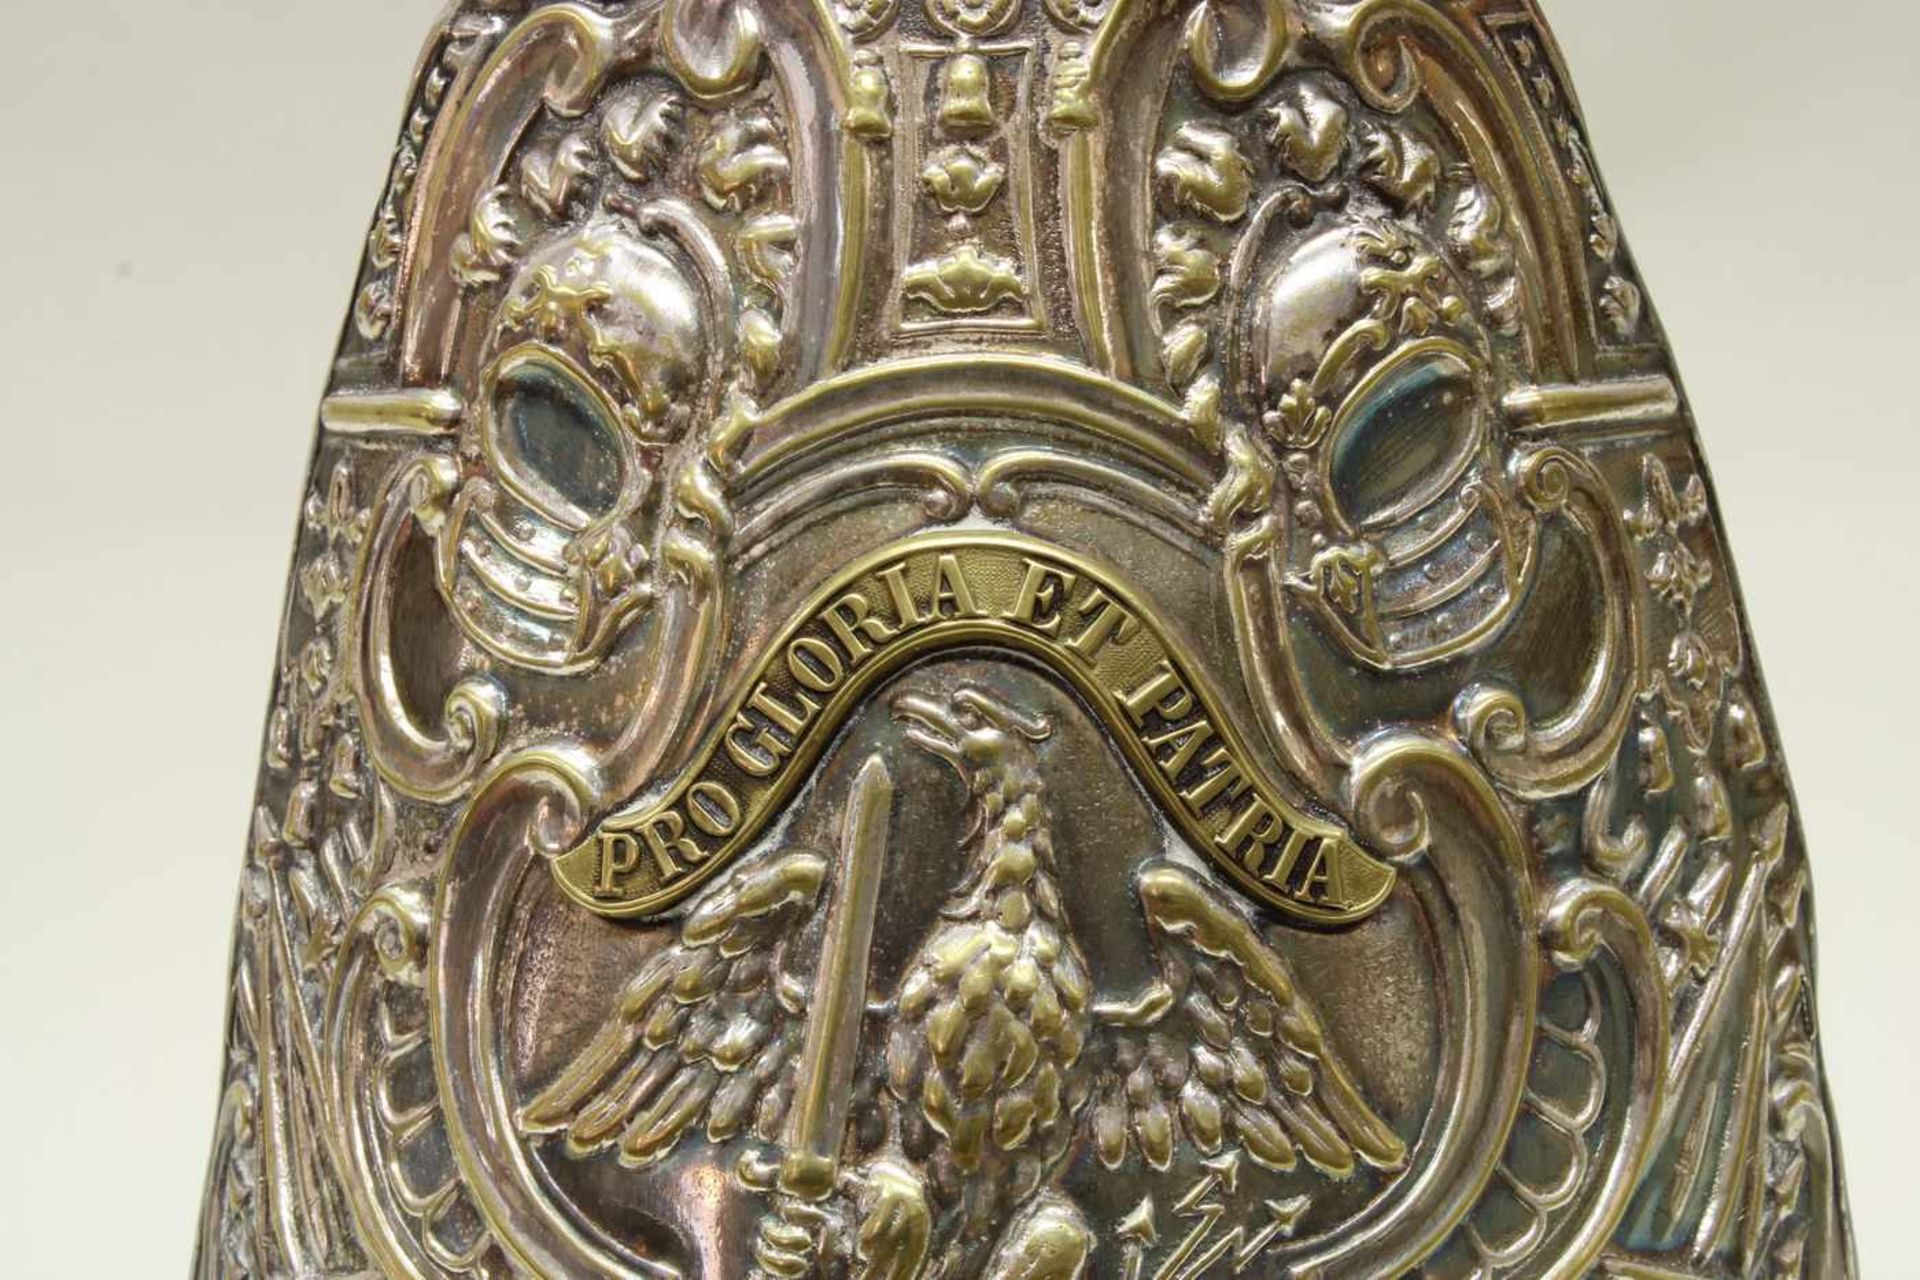 Füsiliermütze, Preussen, Ende 19. Jh., reliefiertes Mützenblech "Pro gloria et patria", mit Adler - Image 2 of 6